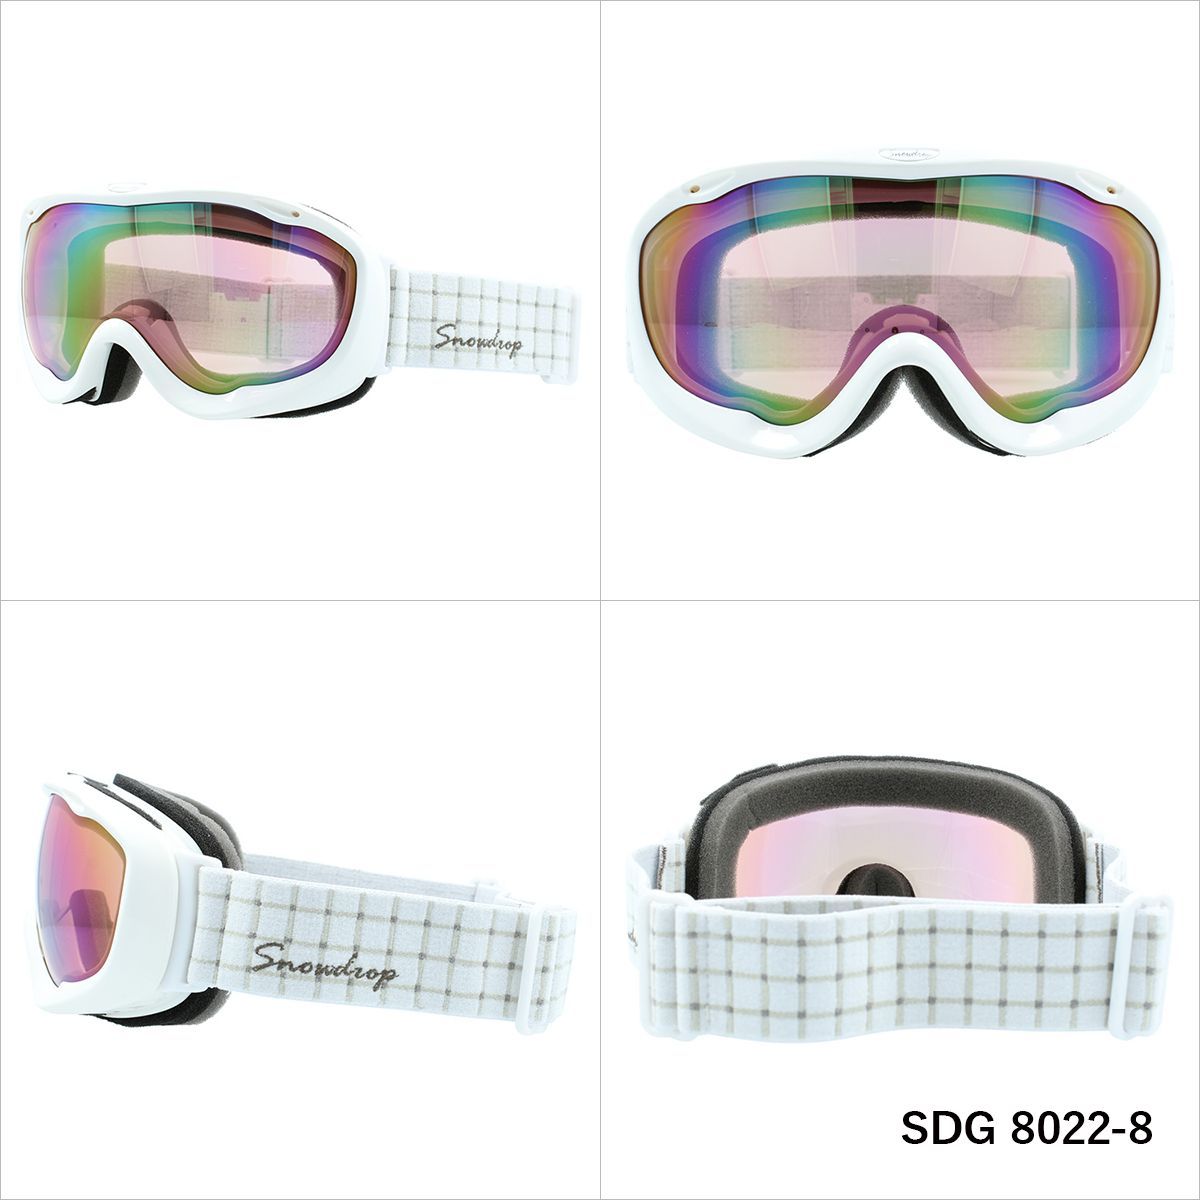 Snowdrop スノードロップ SDG 8022 ヘルメット対応 ミラーレンズ スノーゴーグル スキー スノーボード スノボ 球面ダブルレンズ フレームあり レディース ウィンタースポーツ 曇り防止 曇り止め 誕生日 プレゼント 女性 SDG 8022-2